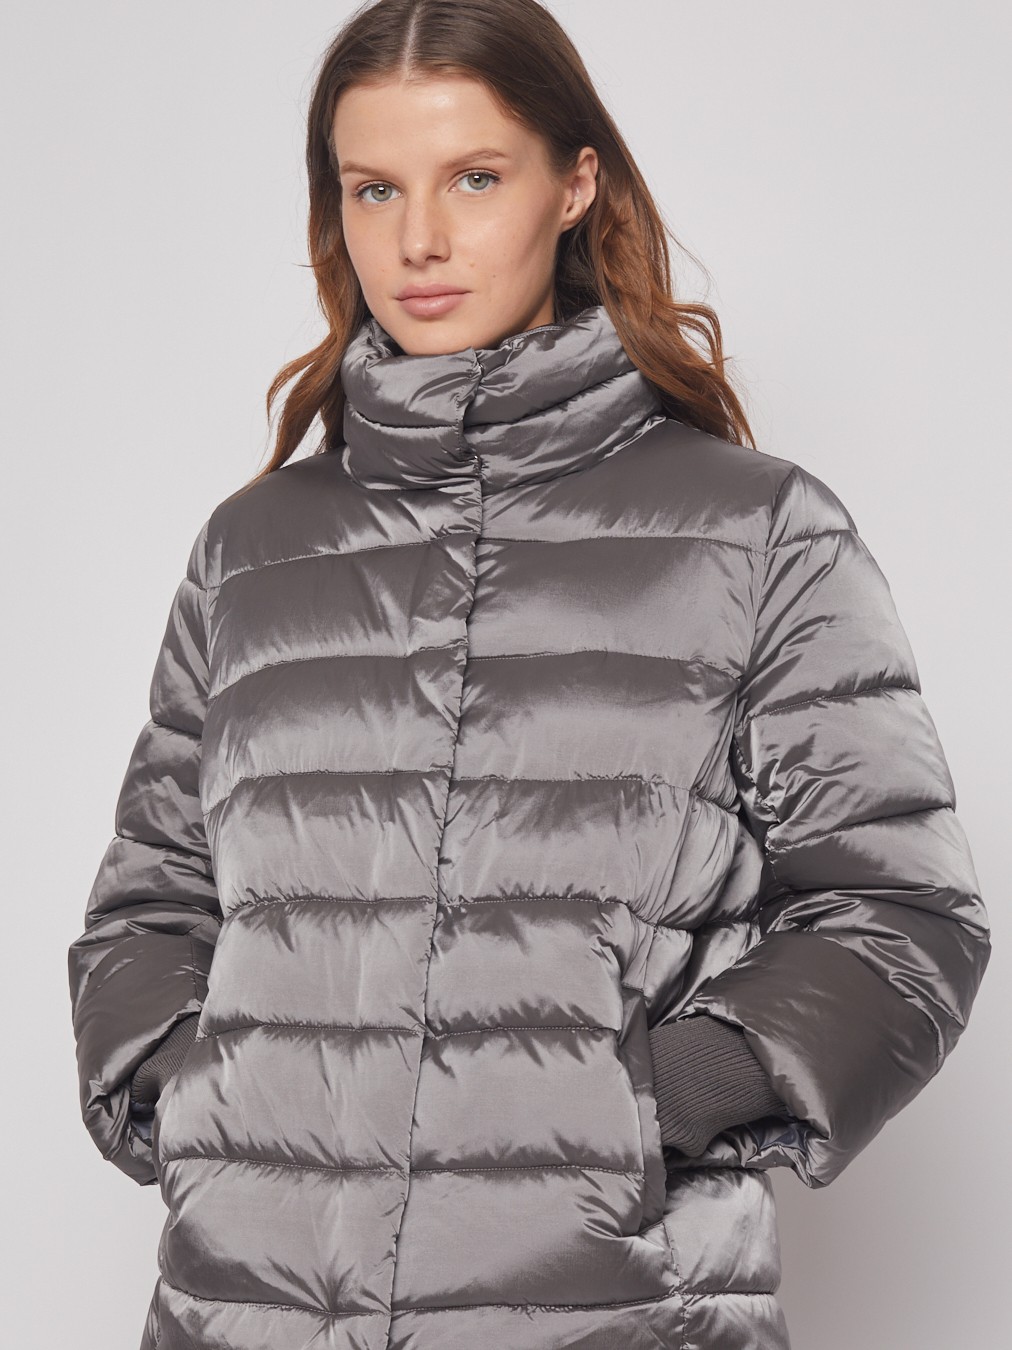 Тёплая куртка с воротником-стойкой zolla 022345102294, цвет темно-серый, размер XS - фото 4